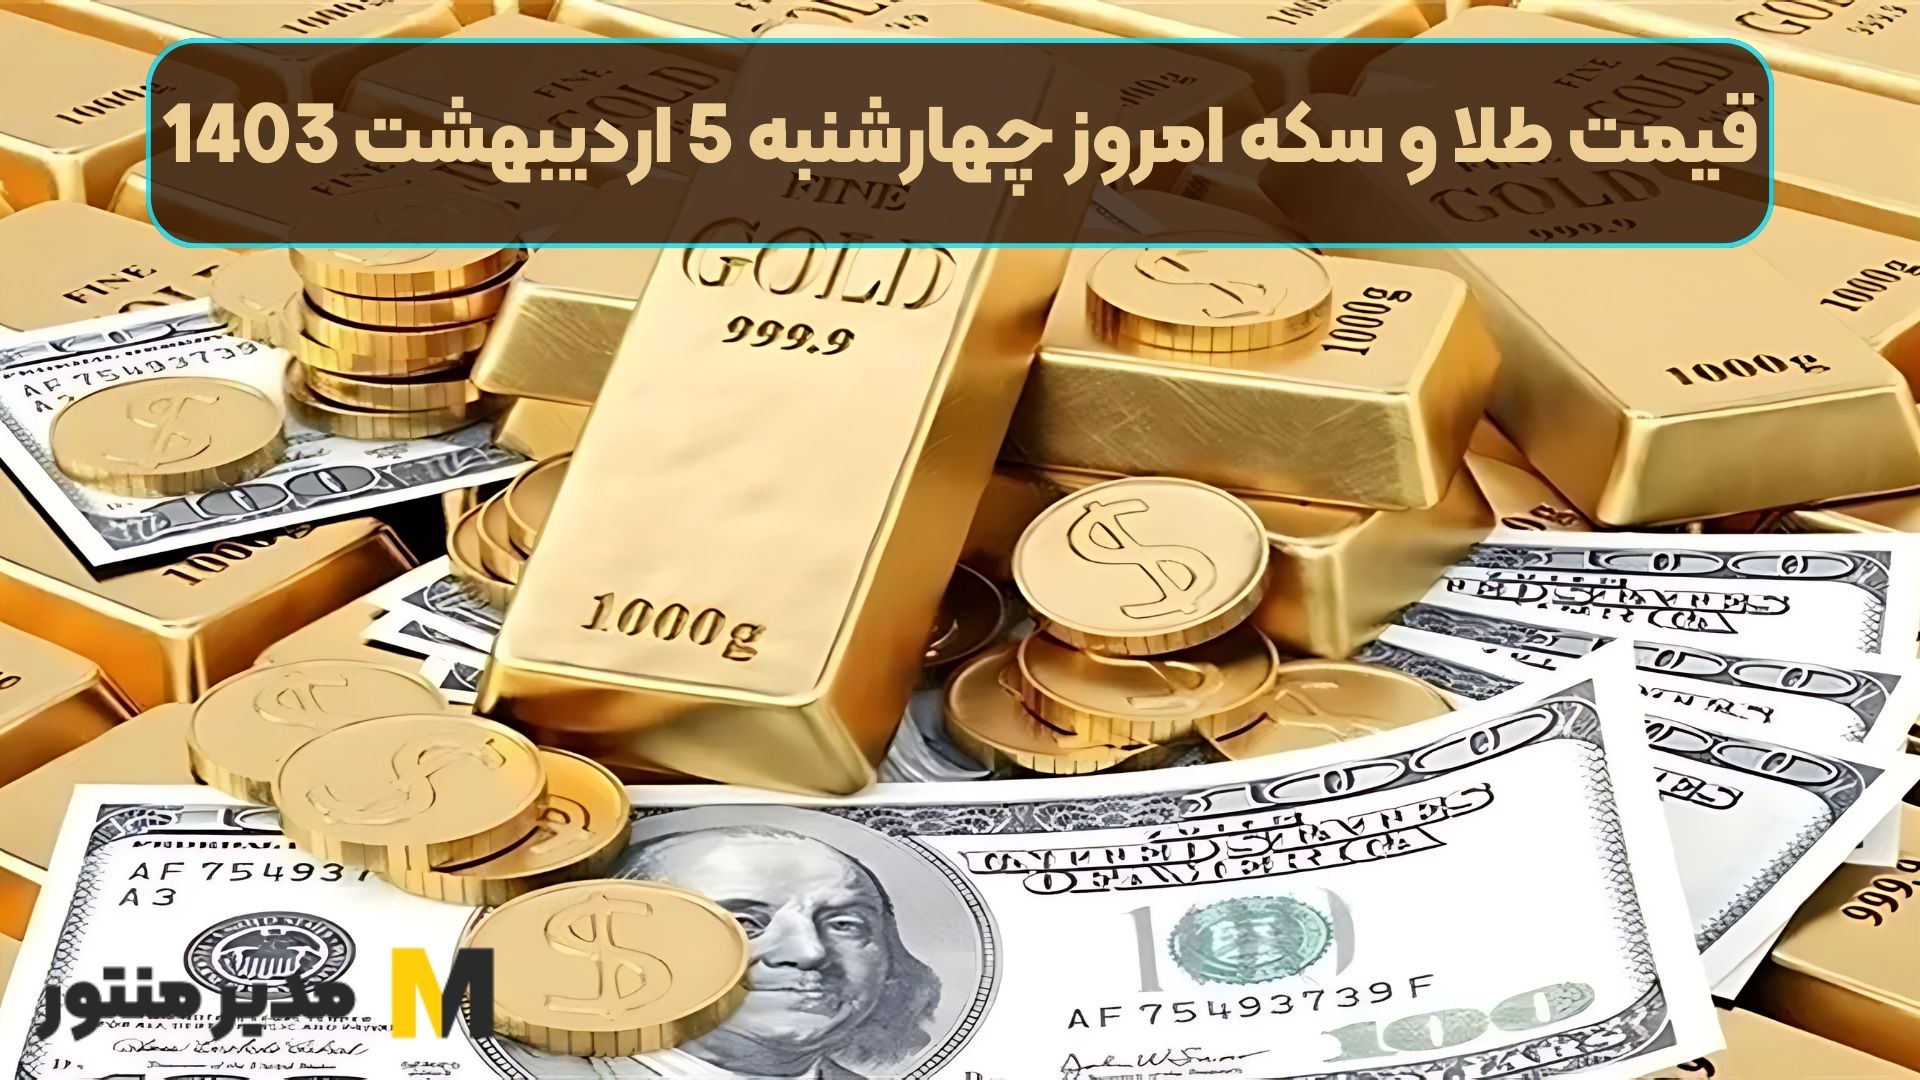 قیمت طلا و سکه امروز چهارشنبه 5 اردیبهشت 1403